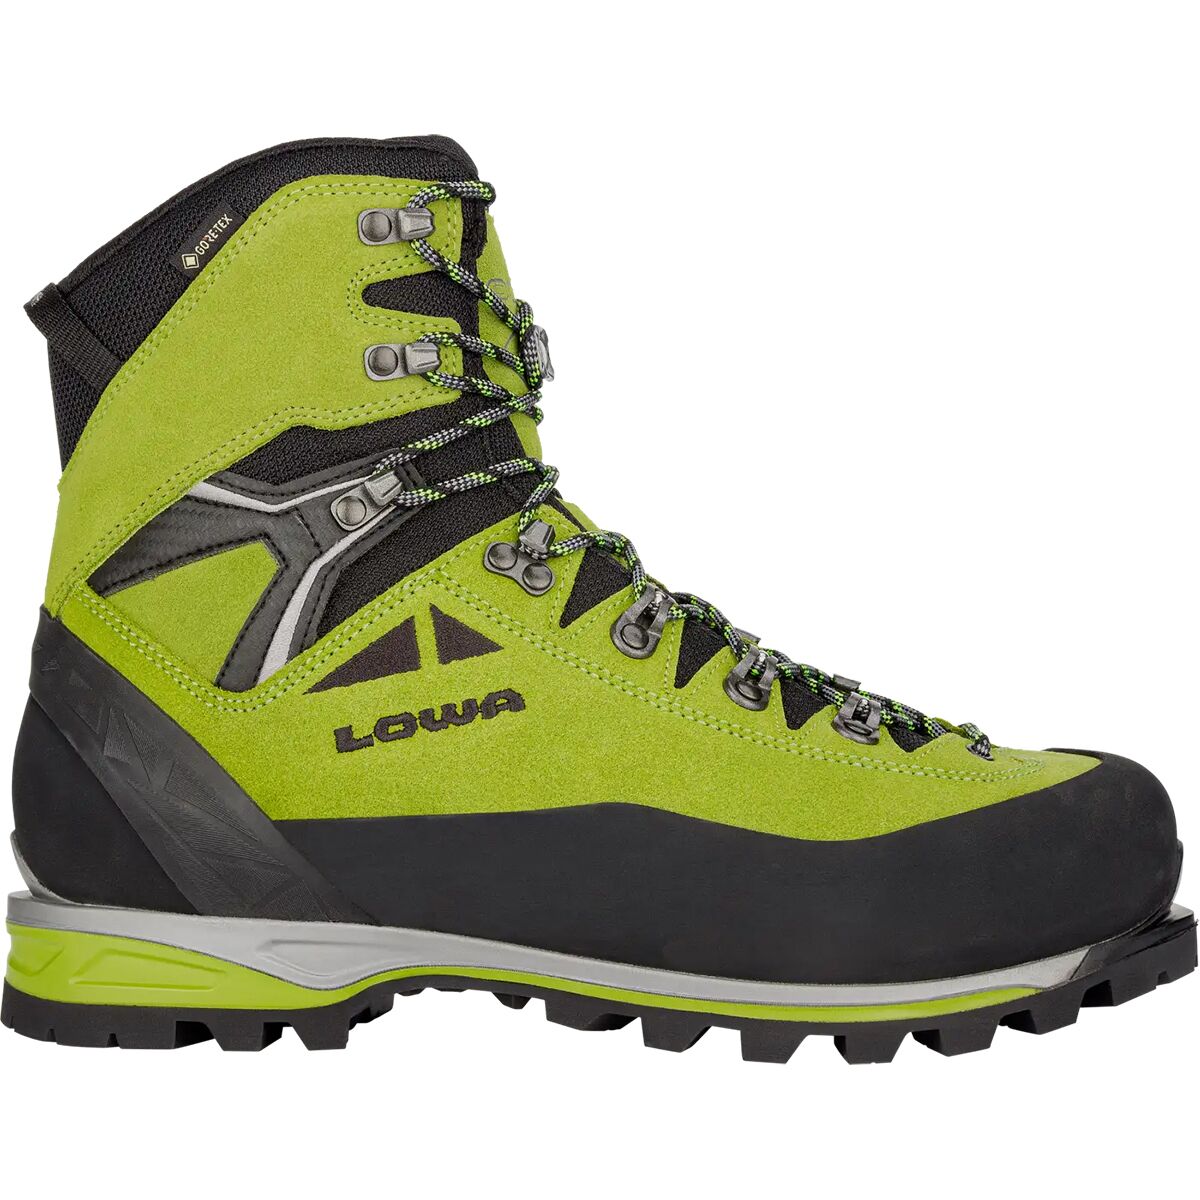 Lowa Alpine Expert II GTX Mountaineering Boot - Men's